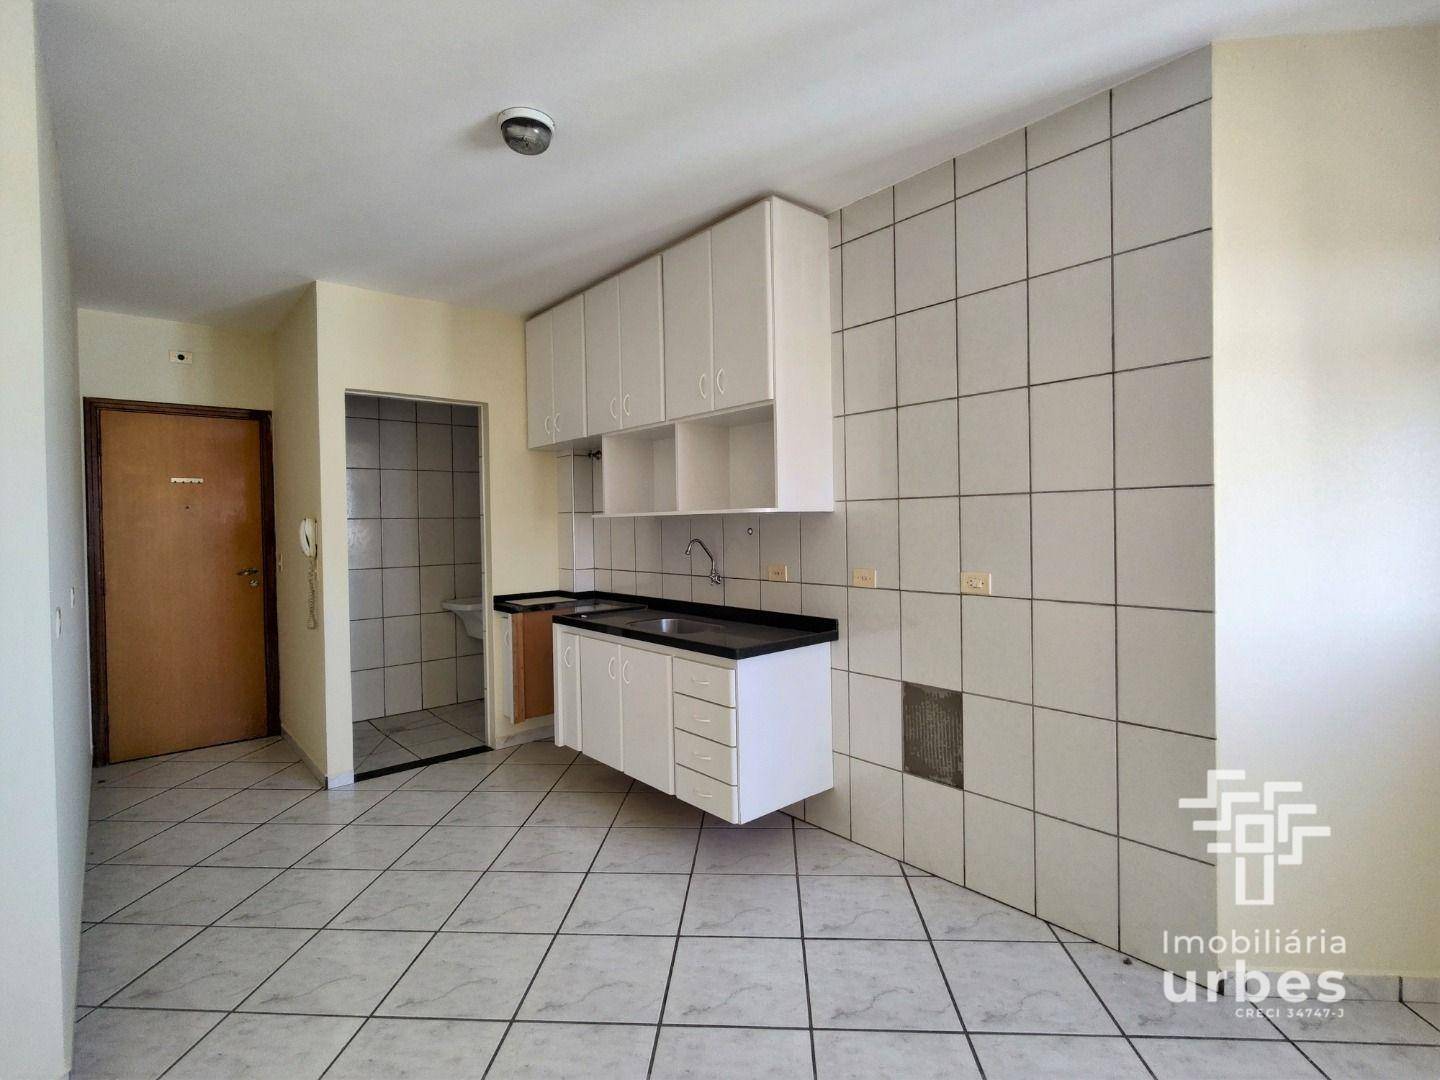 Apartamento, 1 quarto, 45 m² - Foto 3